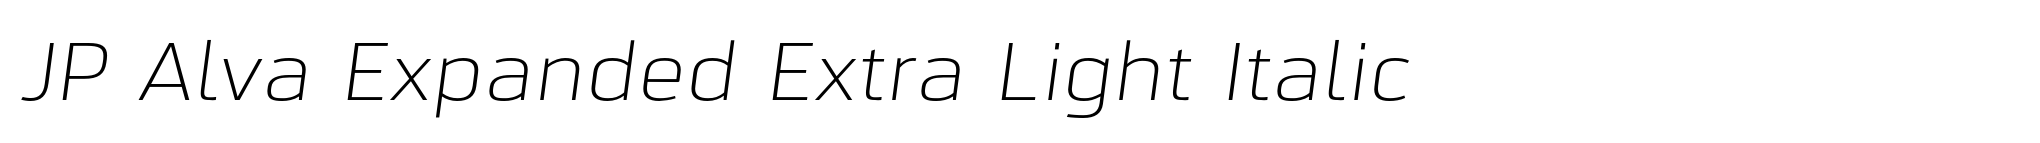 JP Alva Expanded Extra Light Italic image